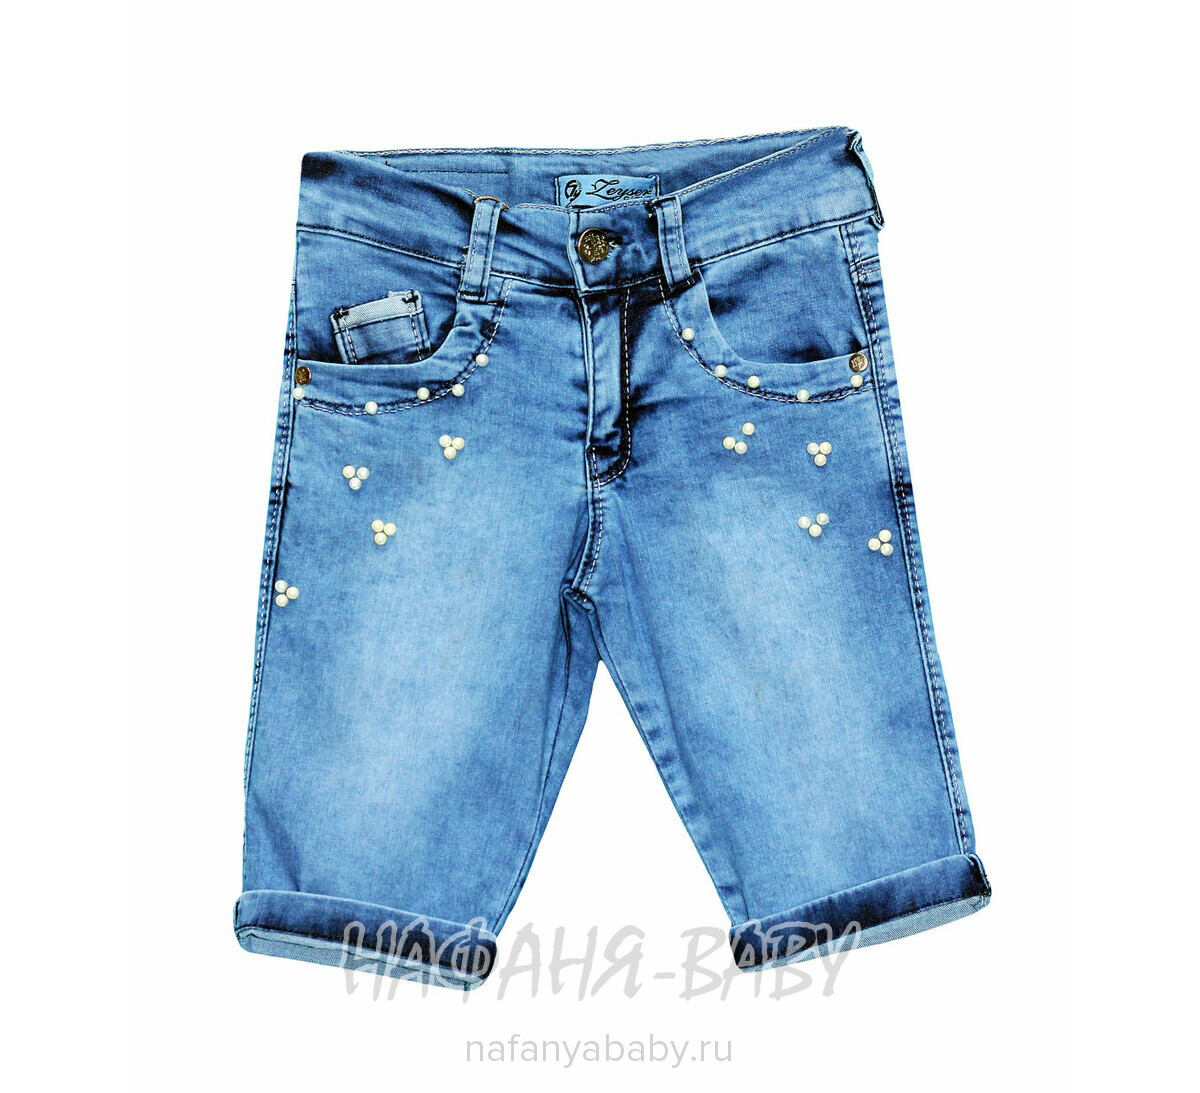 Детские джинсовые шорты ZEISER арт: 31140, 5-9 лет, 1-4 года, цвет голубой, оптом Турция